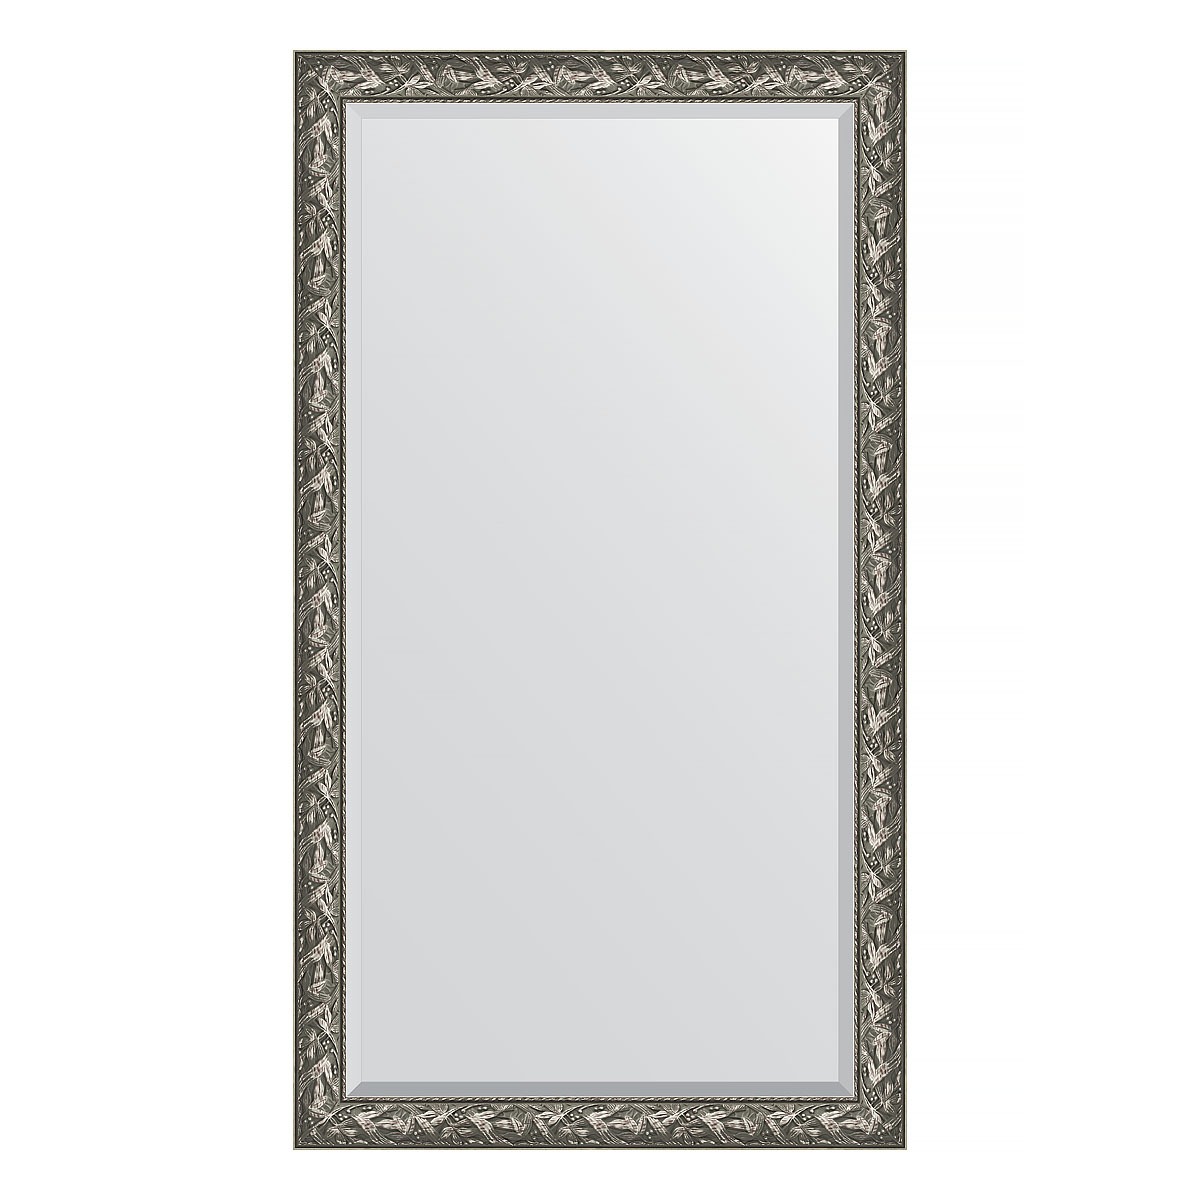 Зеркало напольное с фацетом в багетной раме Evoform византия серебро 99 мм 114x203 см зеркало напольное с фацетом в багетной раме evoform византия серебро 99 мм 84x203 см